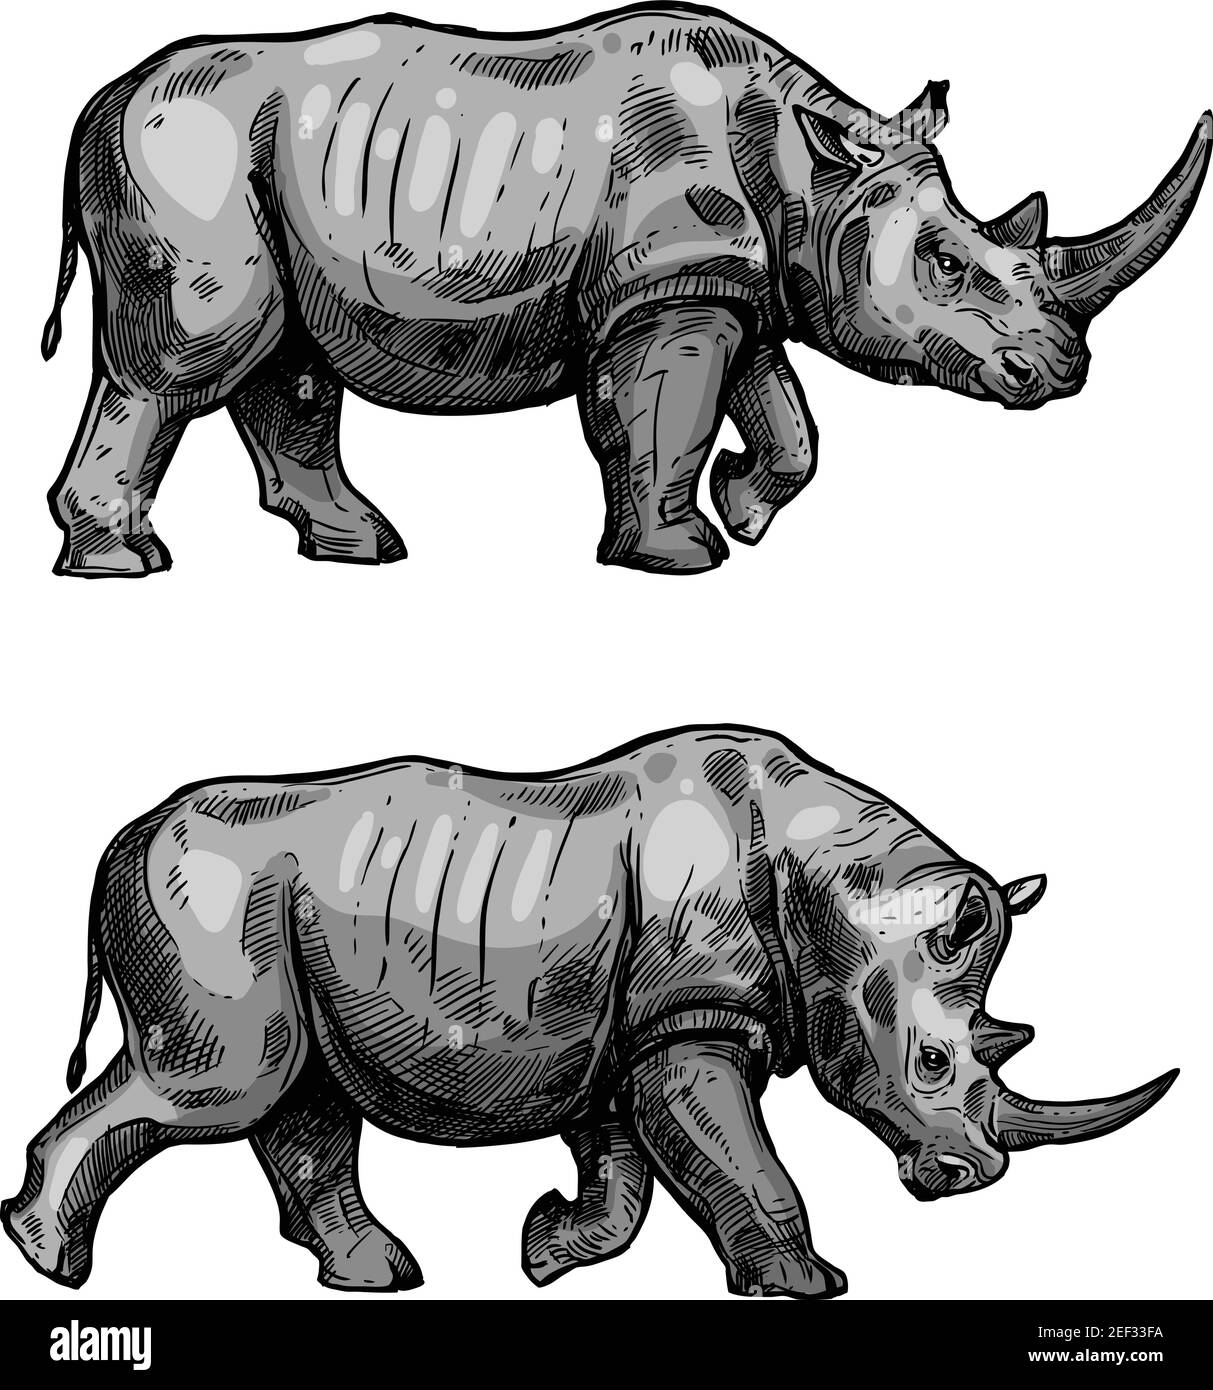 Disegno a piedi di Rhino dell'animale mammifero africano. Rinoceronte selvatico che attacca con testa piegata icona isolata per la caccia sport o safari africano tou di viaggio Illustrazione Vettoriale